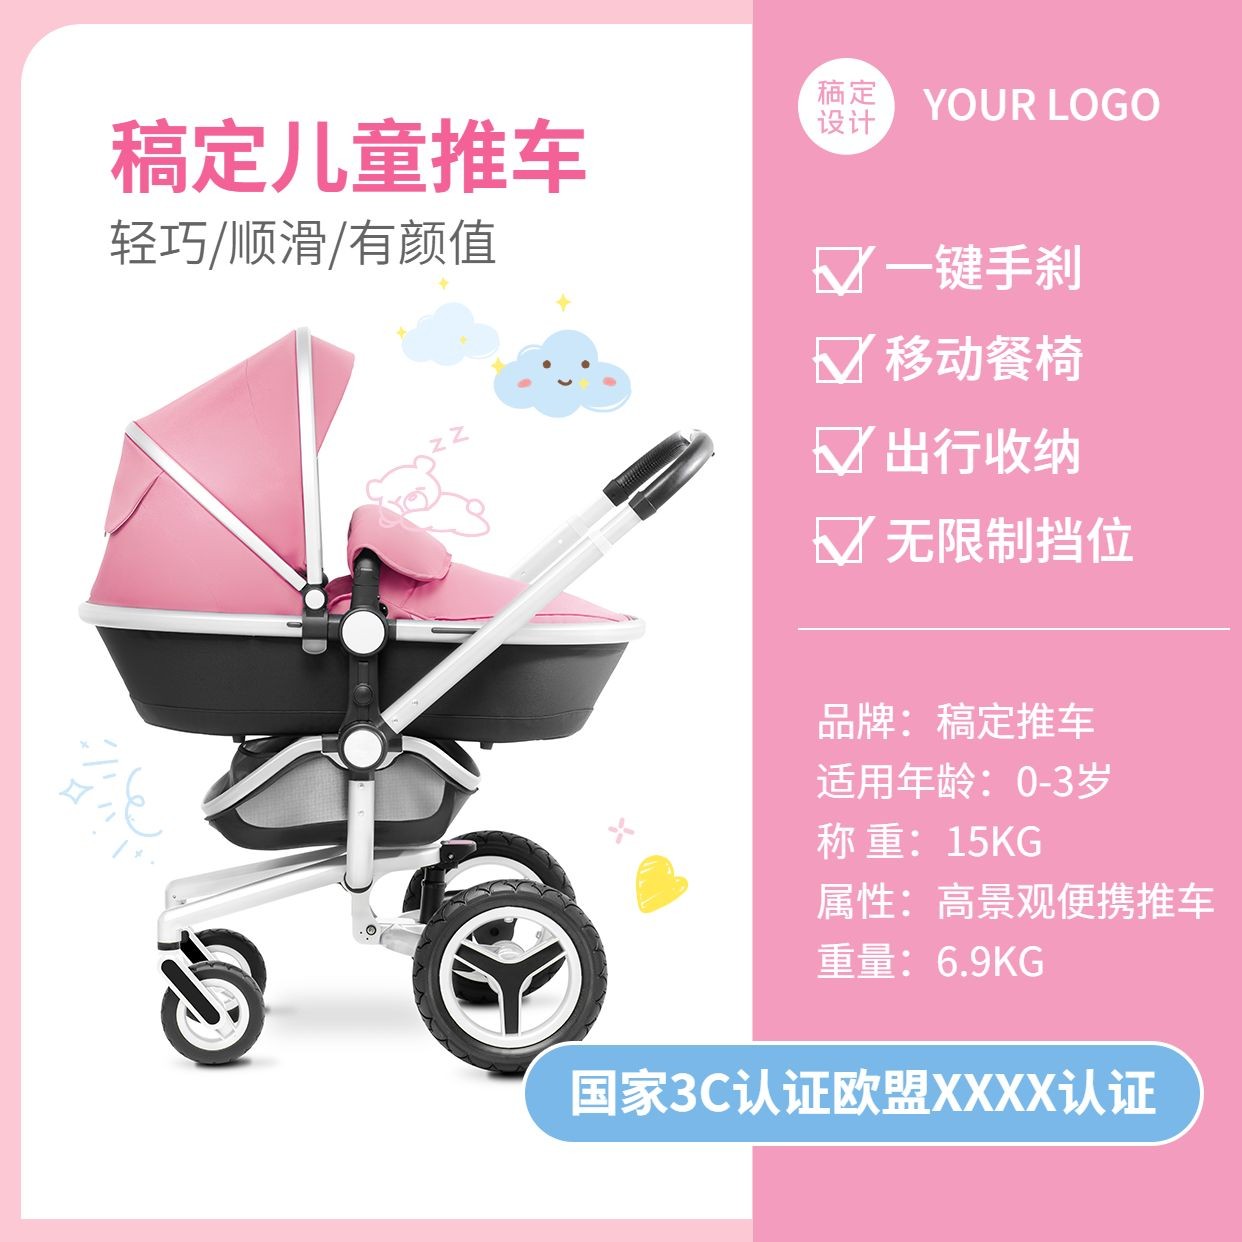 母婴亲子产品营销方形海报预览效果